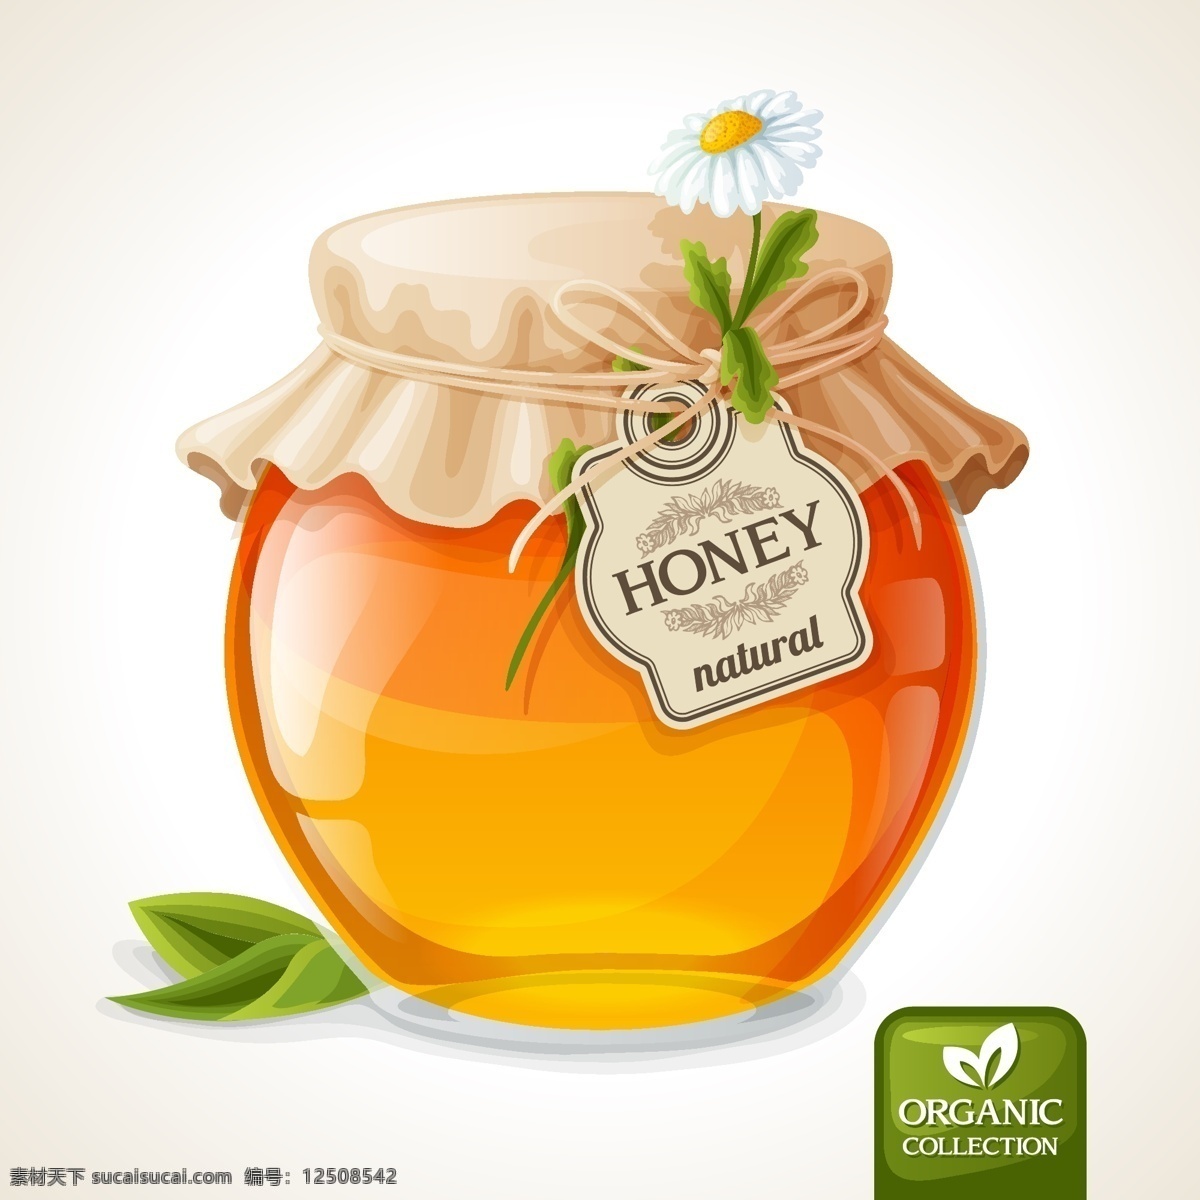 蜂蜜 蜂蜜设计 手绘 菊花 蜂蜜生产 蜂蜜罐 蜜罐 蜂蜜图标 蜂蜜商标 蜂蜜标签 蜂蜜广告 蜂蜜产品 餐饮美食 生 生活百科